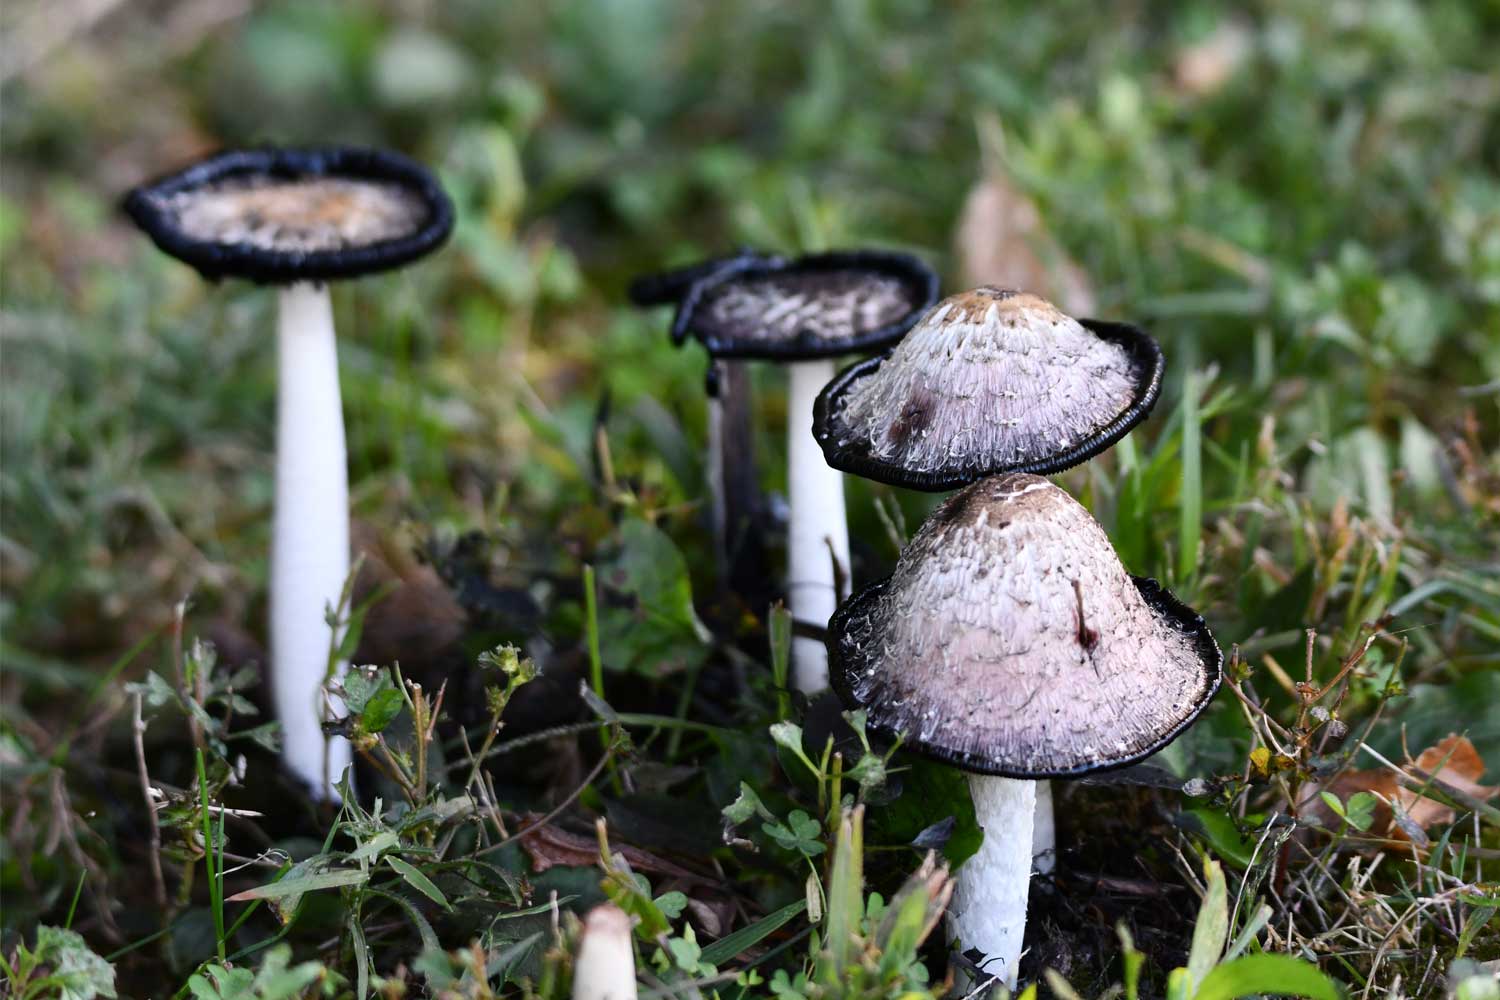 Shaggy mane mushroom fungus among grasses.